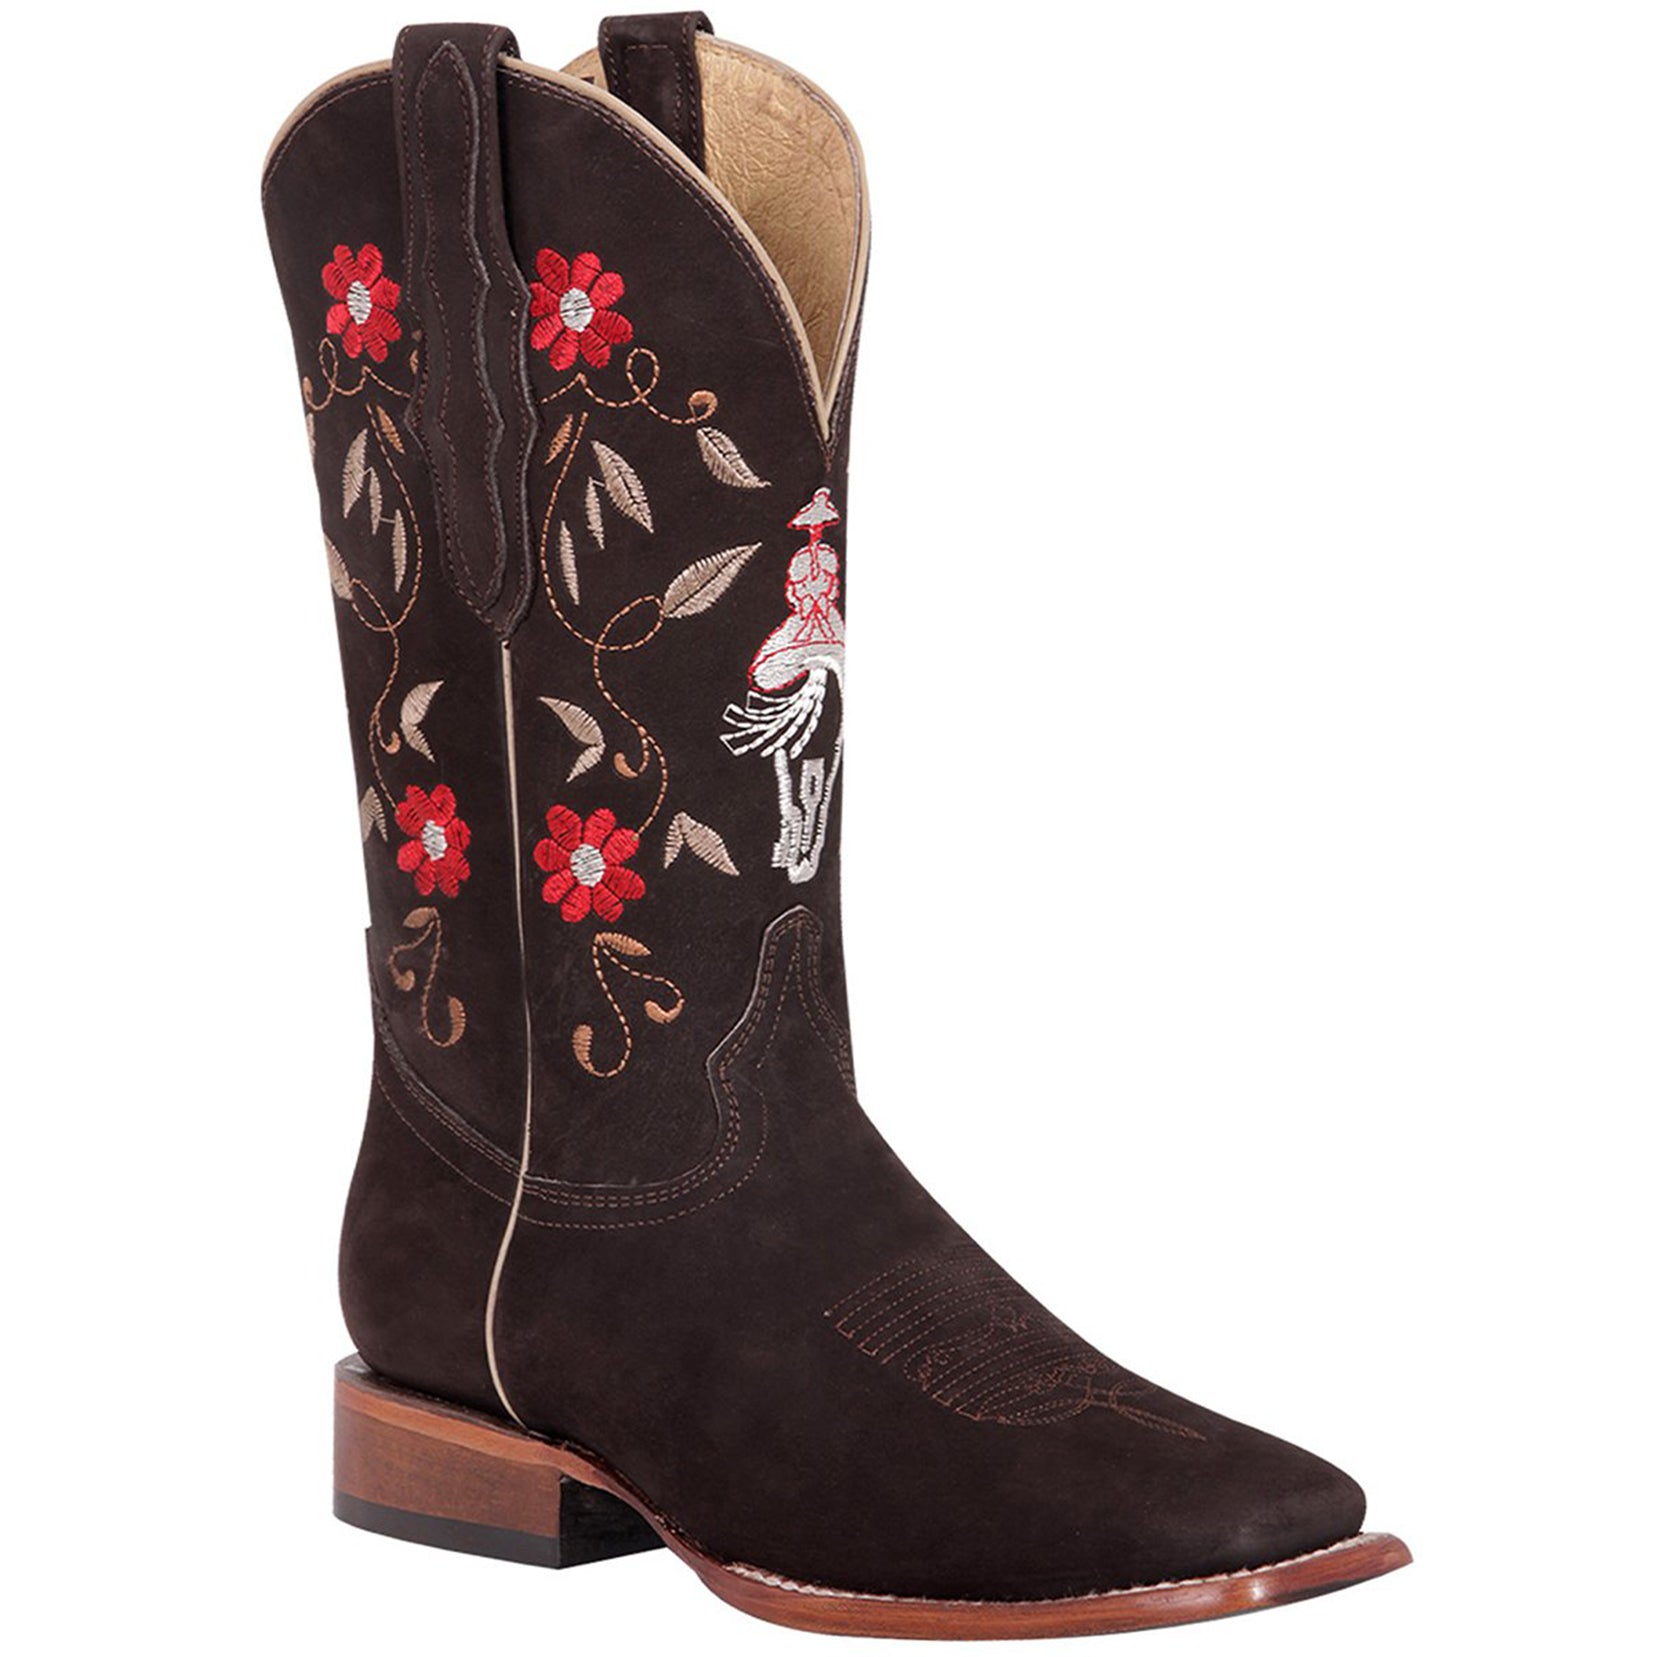 El General Boots Nubuck Escaramuza & Flower Design